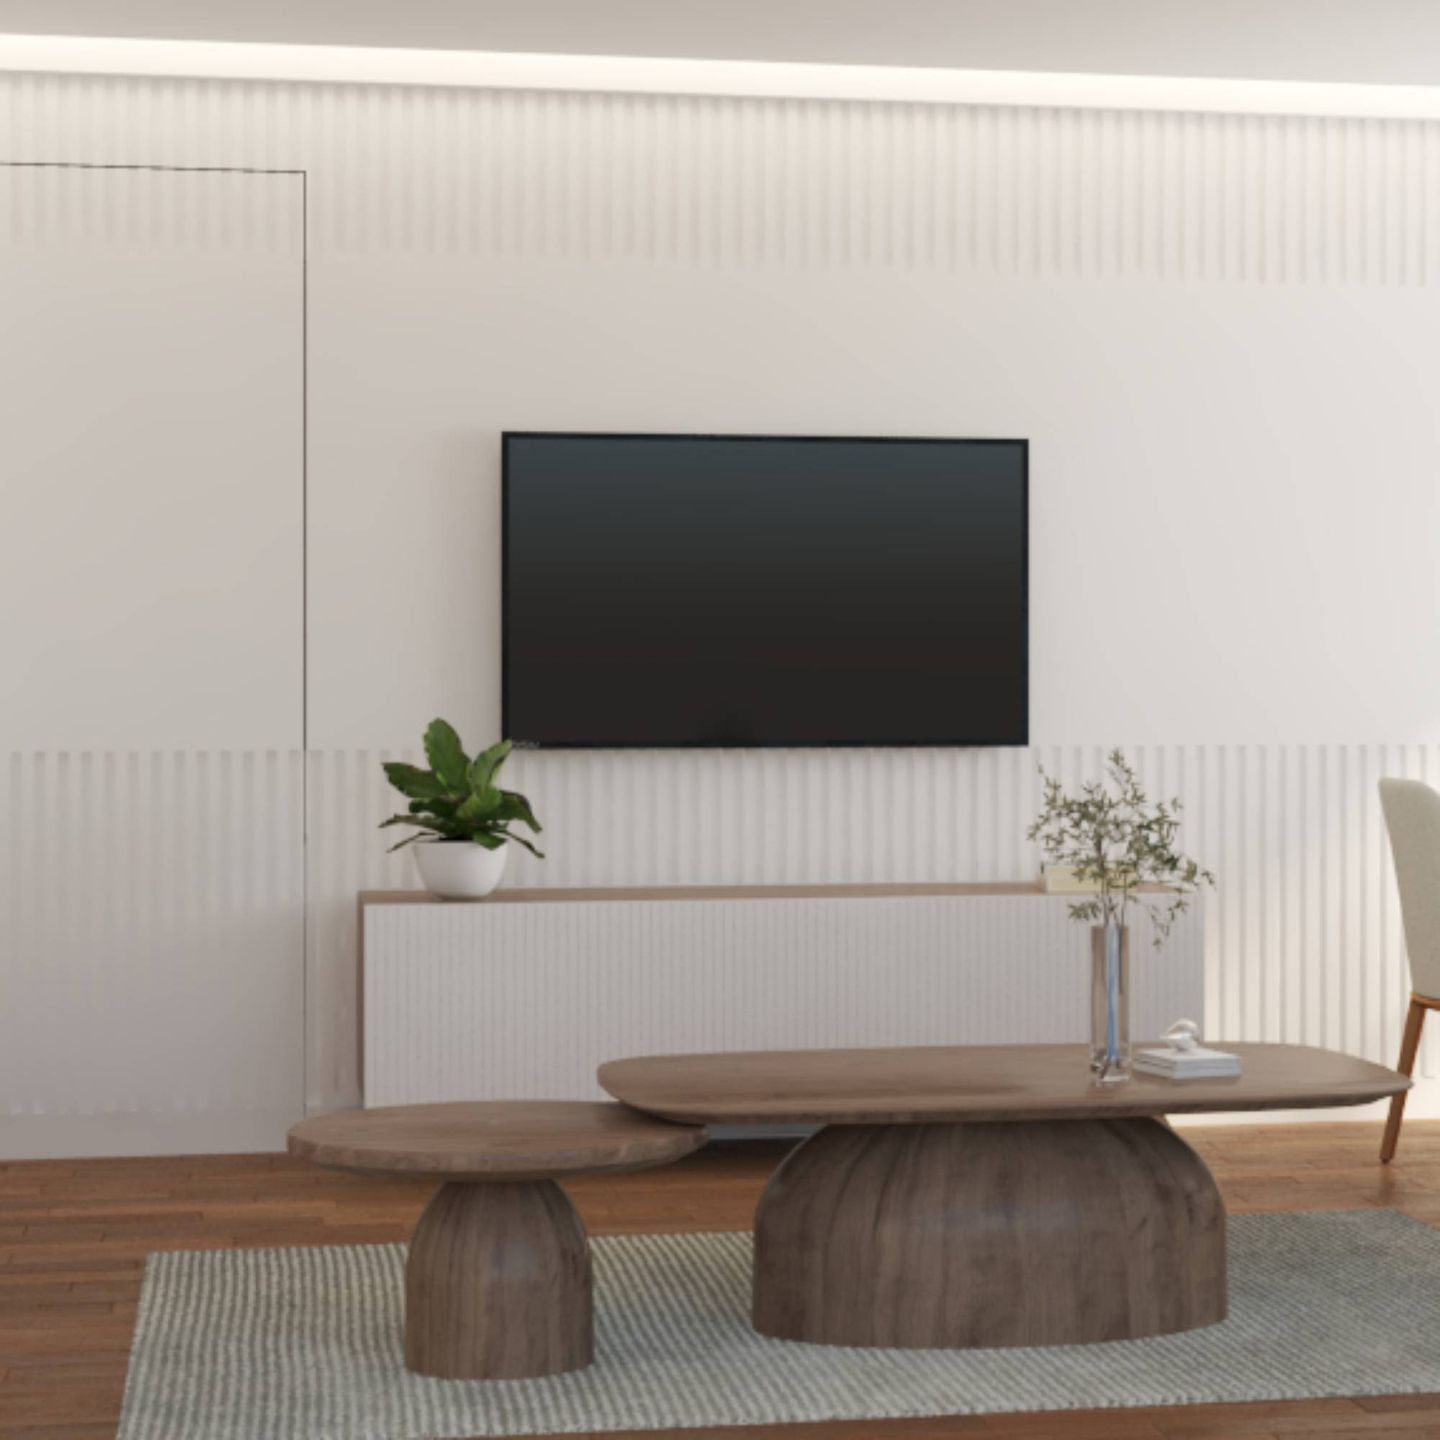 TV Unit Design With White Striped Wallpaper - Livspace